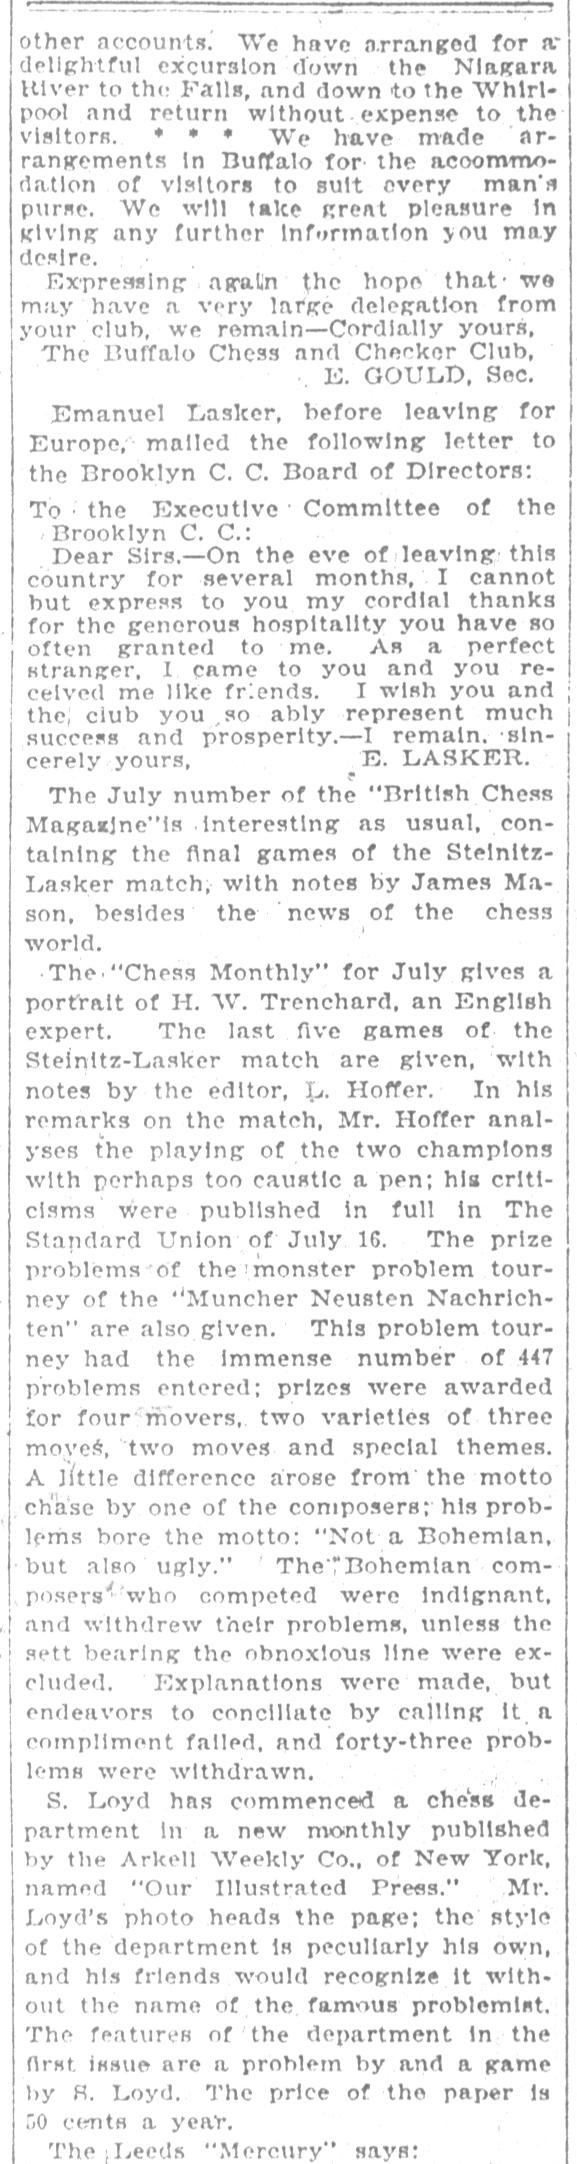 1894.07.21-03 Brooklyn Daily Standard-Union.jpg